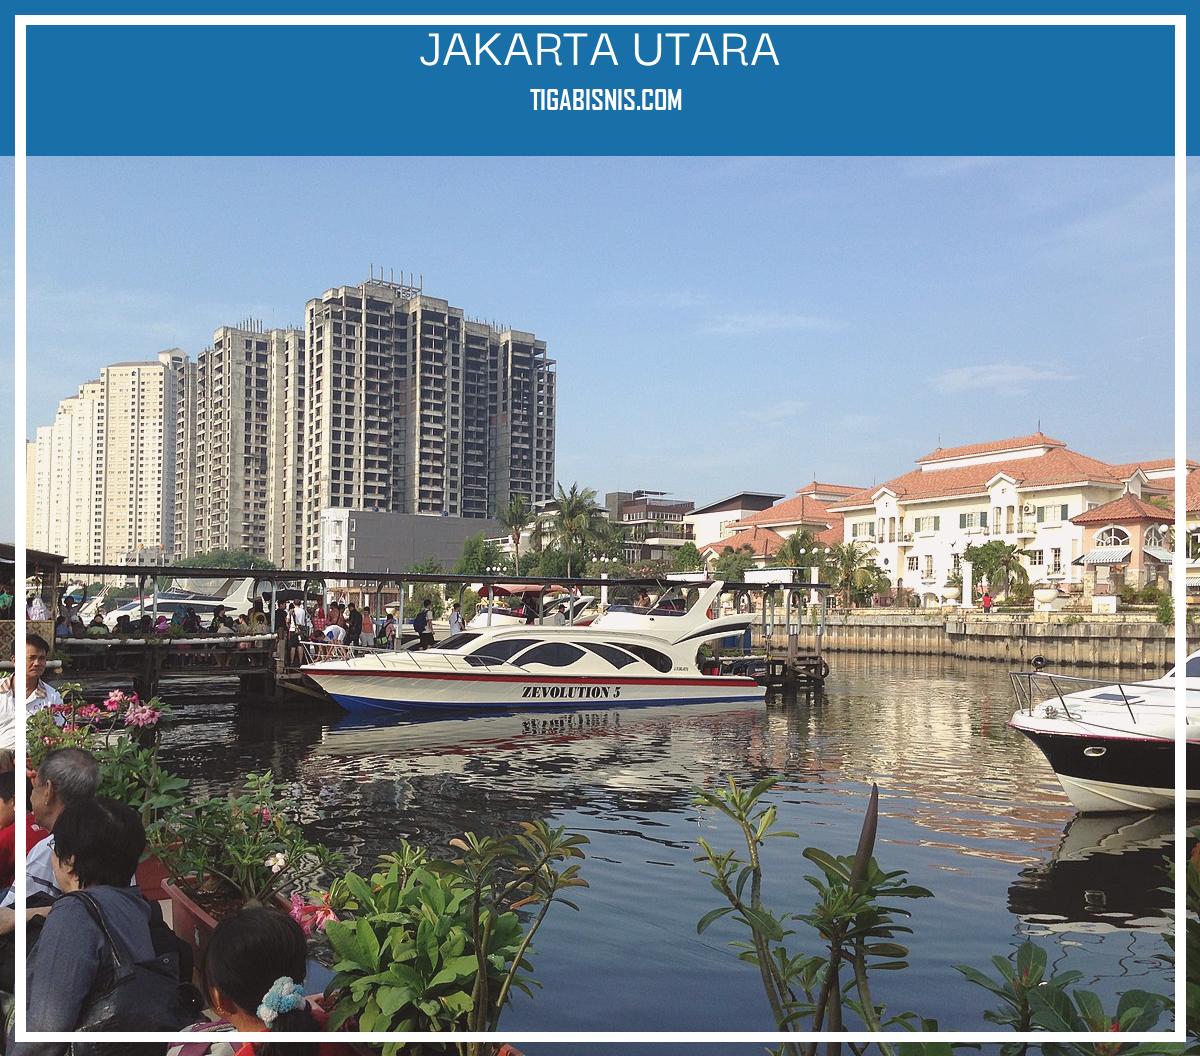 Lowongan Kerja Untuk Lokasi Jakarta Utara Saat Ini. Sumber : Https://en.wikipedia.org/wiki/north_jakarta